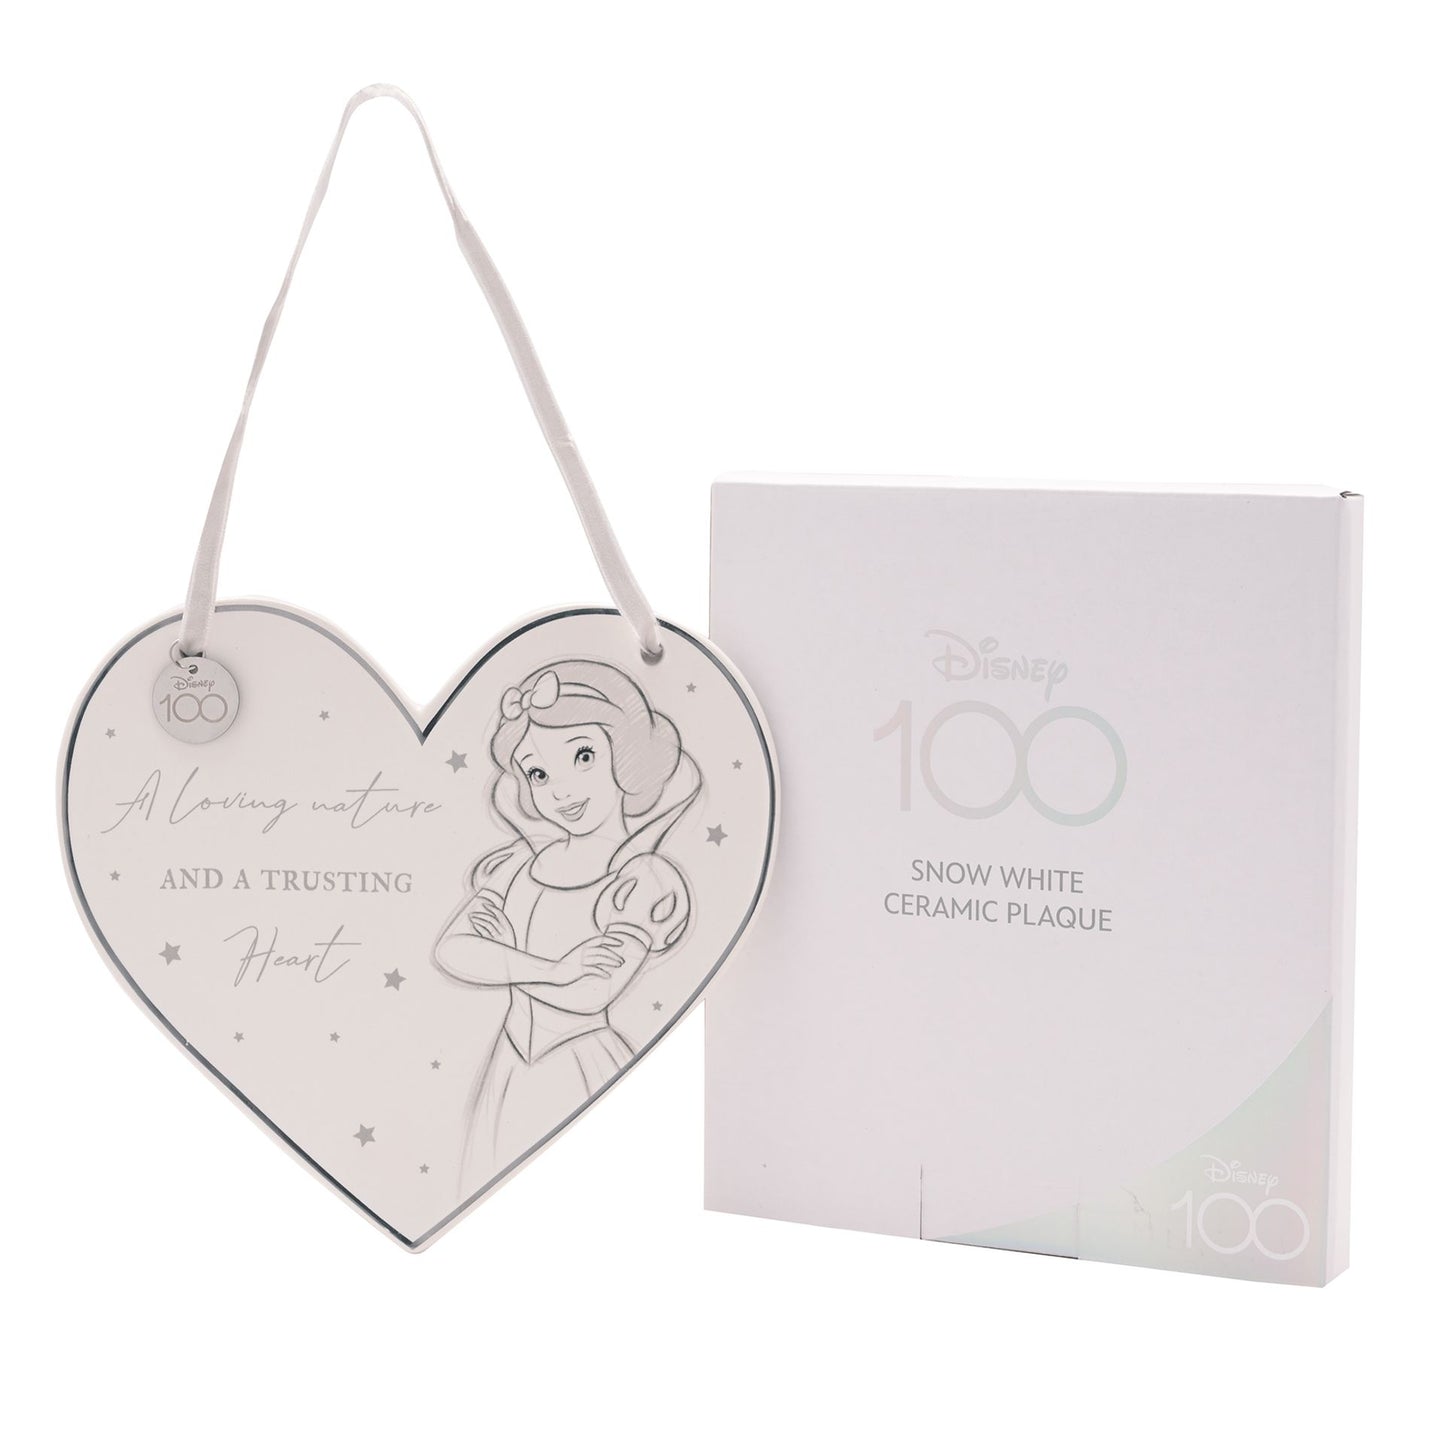 "Betoverende Sneeuwwitje keramische plaquette van Disney 100 - Met inspirerende illustratie van Sneeuwwitje en de titel 'A Loving Nature and a Trusting Heart'. Een must-have voor Disney-liefhebbers van alle leeftijden! Verpakt in een prachtige geschenkverpakking."